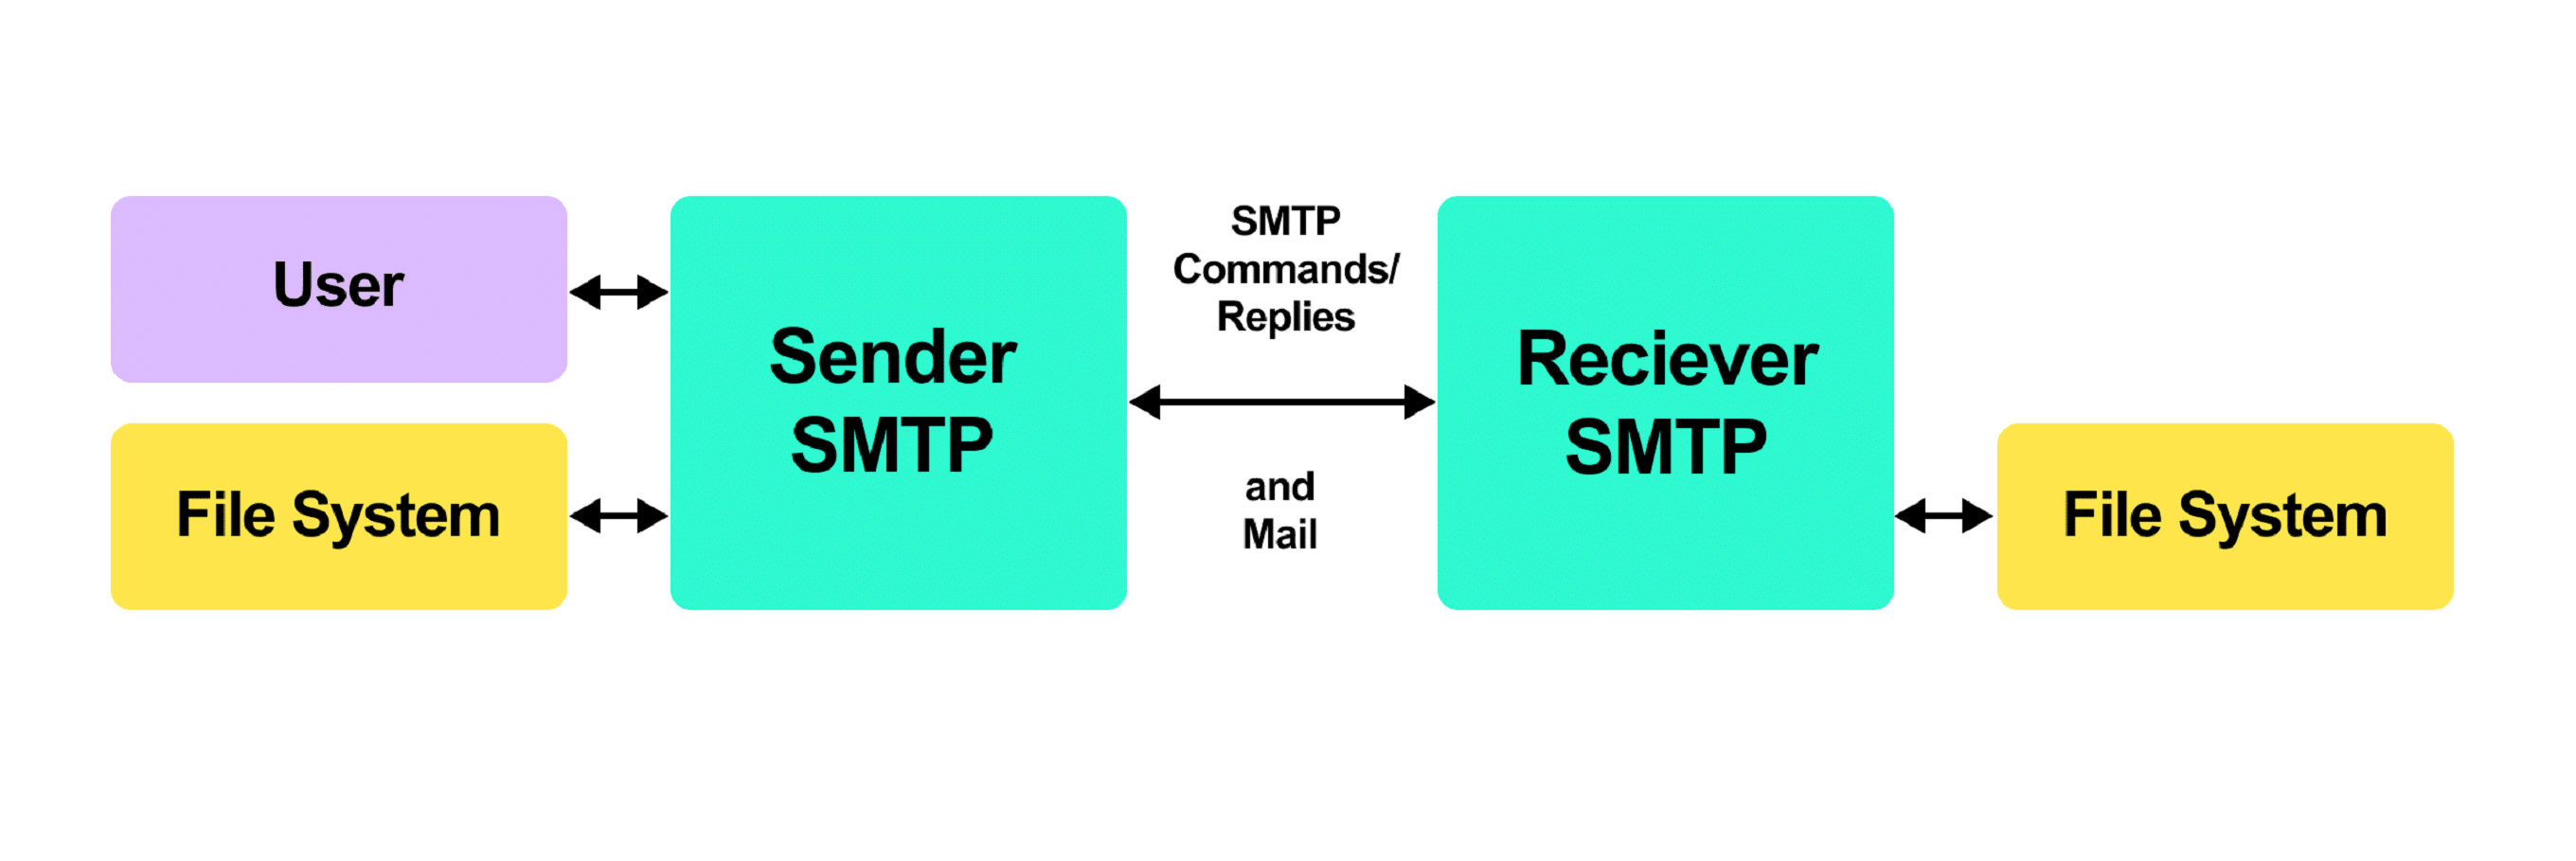 يُستخدم بروتوكول smtp لنقل رسائل البريد الإلكتروني.